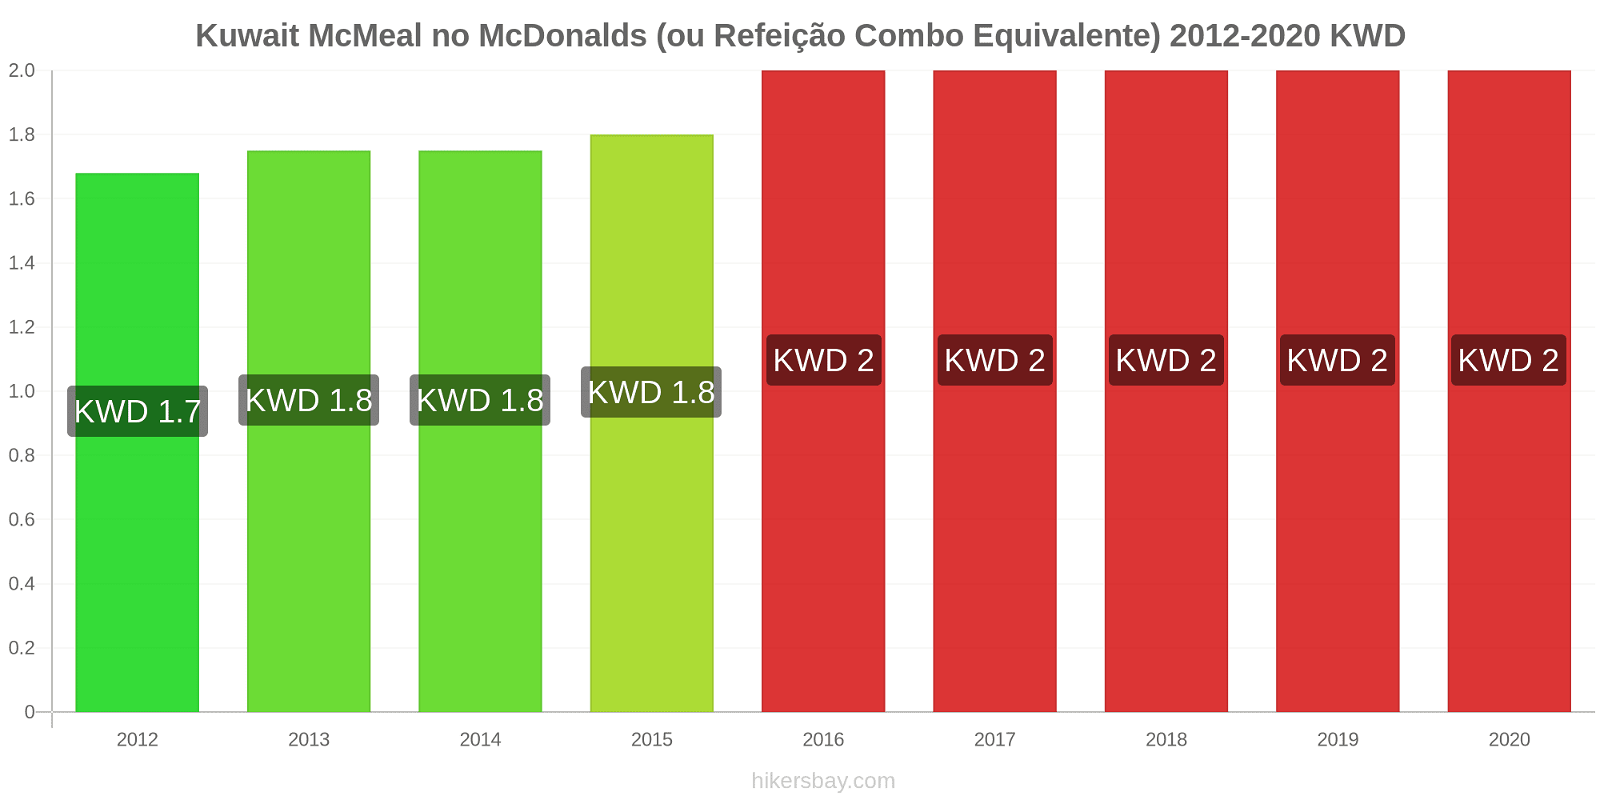 Kuwait variação de preço McMeal no McDonald ' s (ou refeição Combo equivalente) hikersbay.com